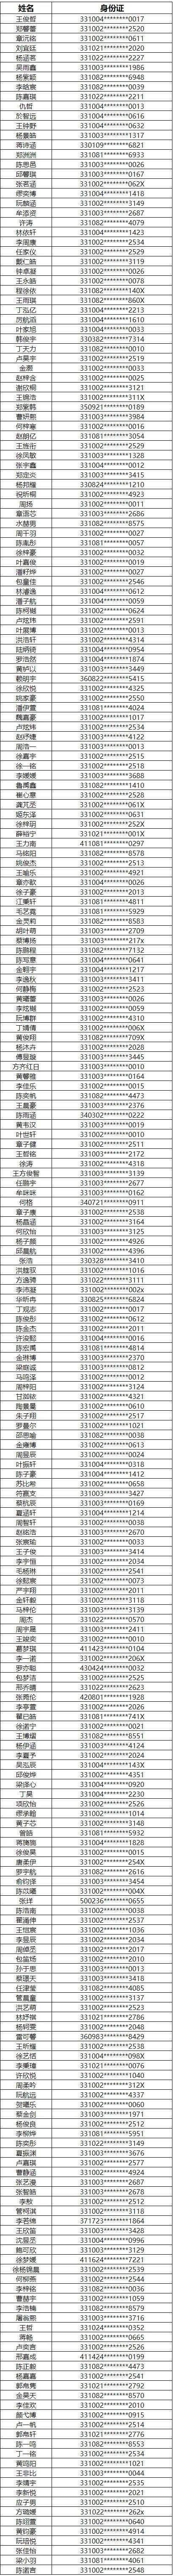 2020台州高中学校排名_2020年浙江省台州市高中学校排名top10